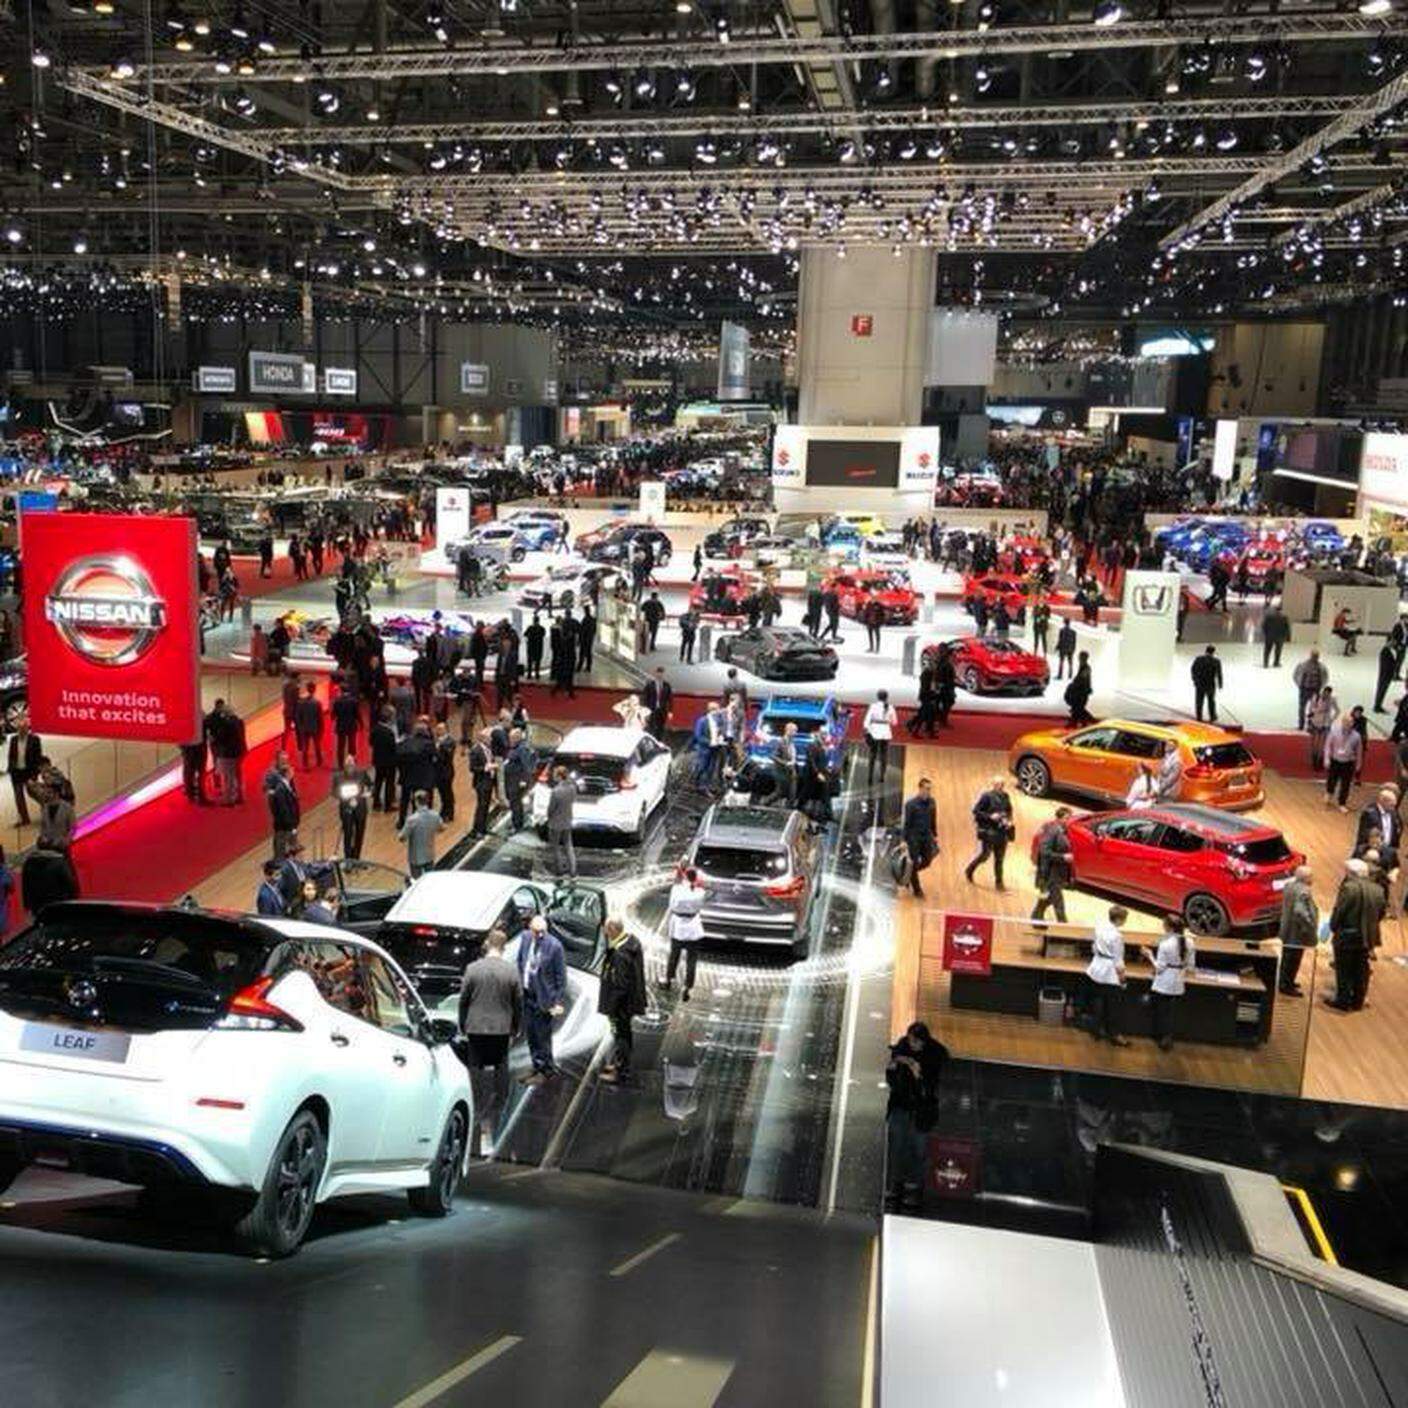 Salon international de l'automobile 2019